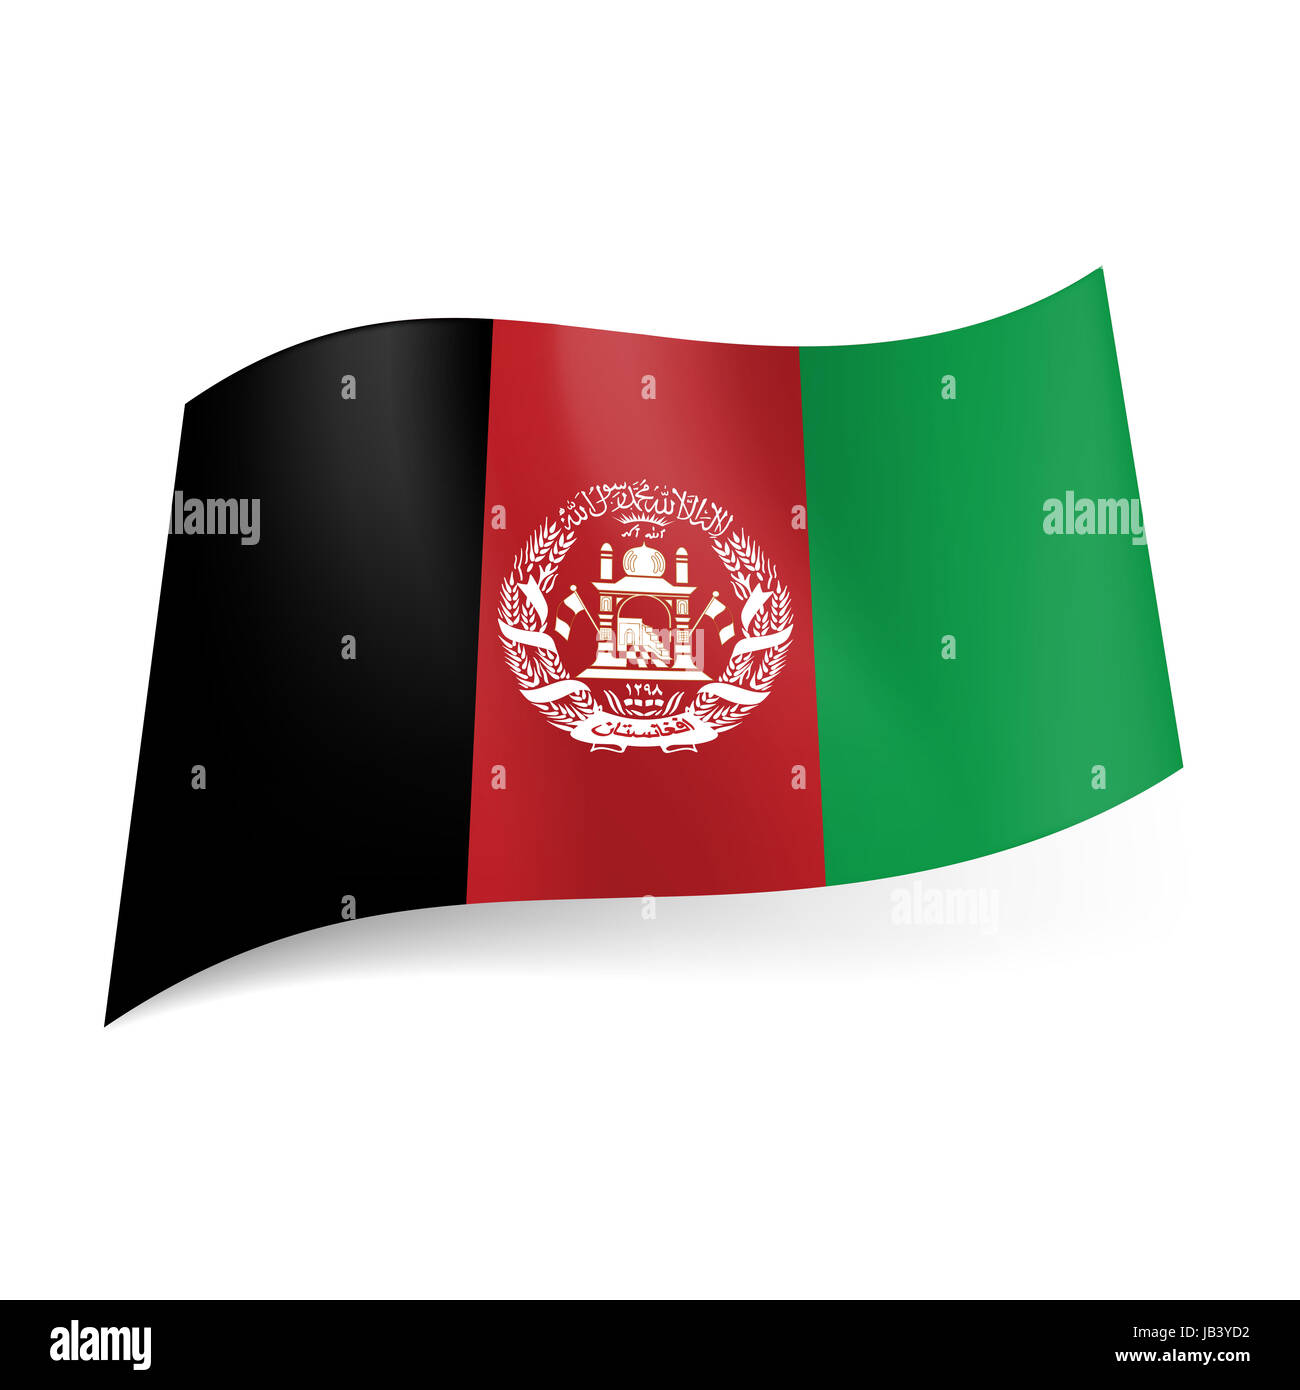 Bandiera nazionale dell'Afghanistan: nero, rosso e verde strisce verticali  con stemma sulla fascia centrale Foto stock - Alamy